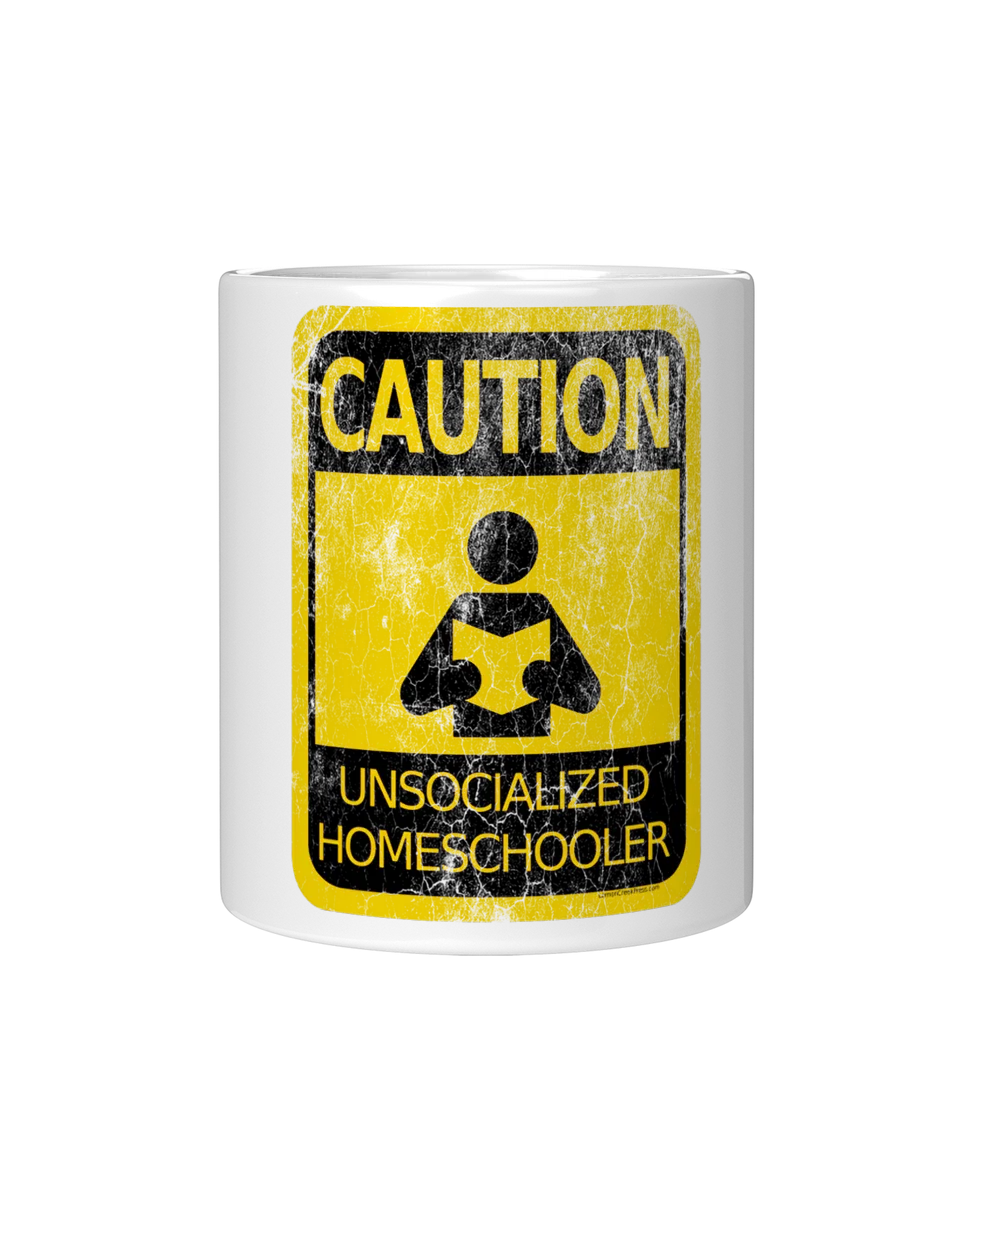 Caution! Unsocialized Homeschooler T-Shirt